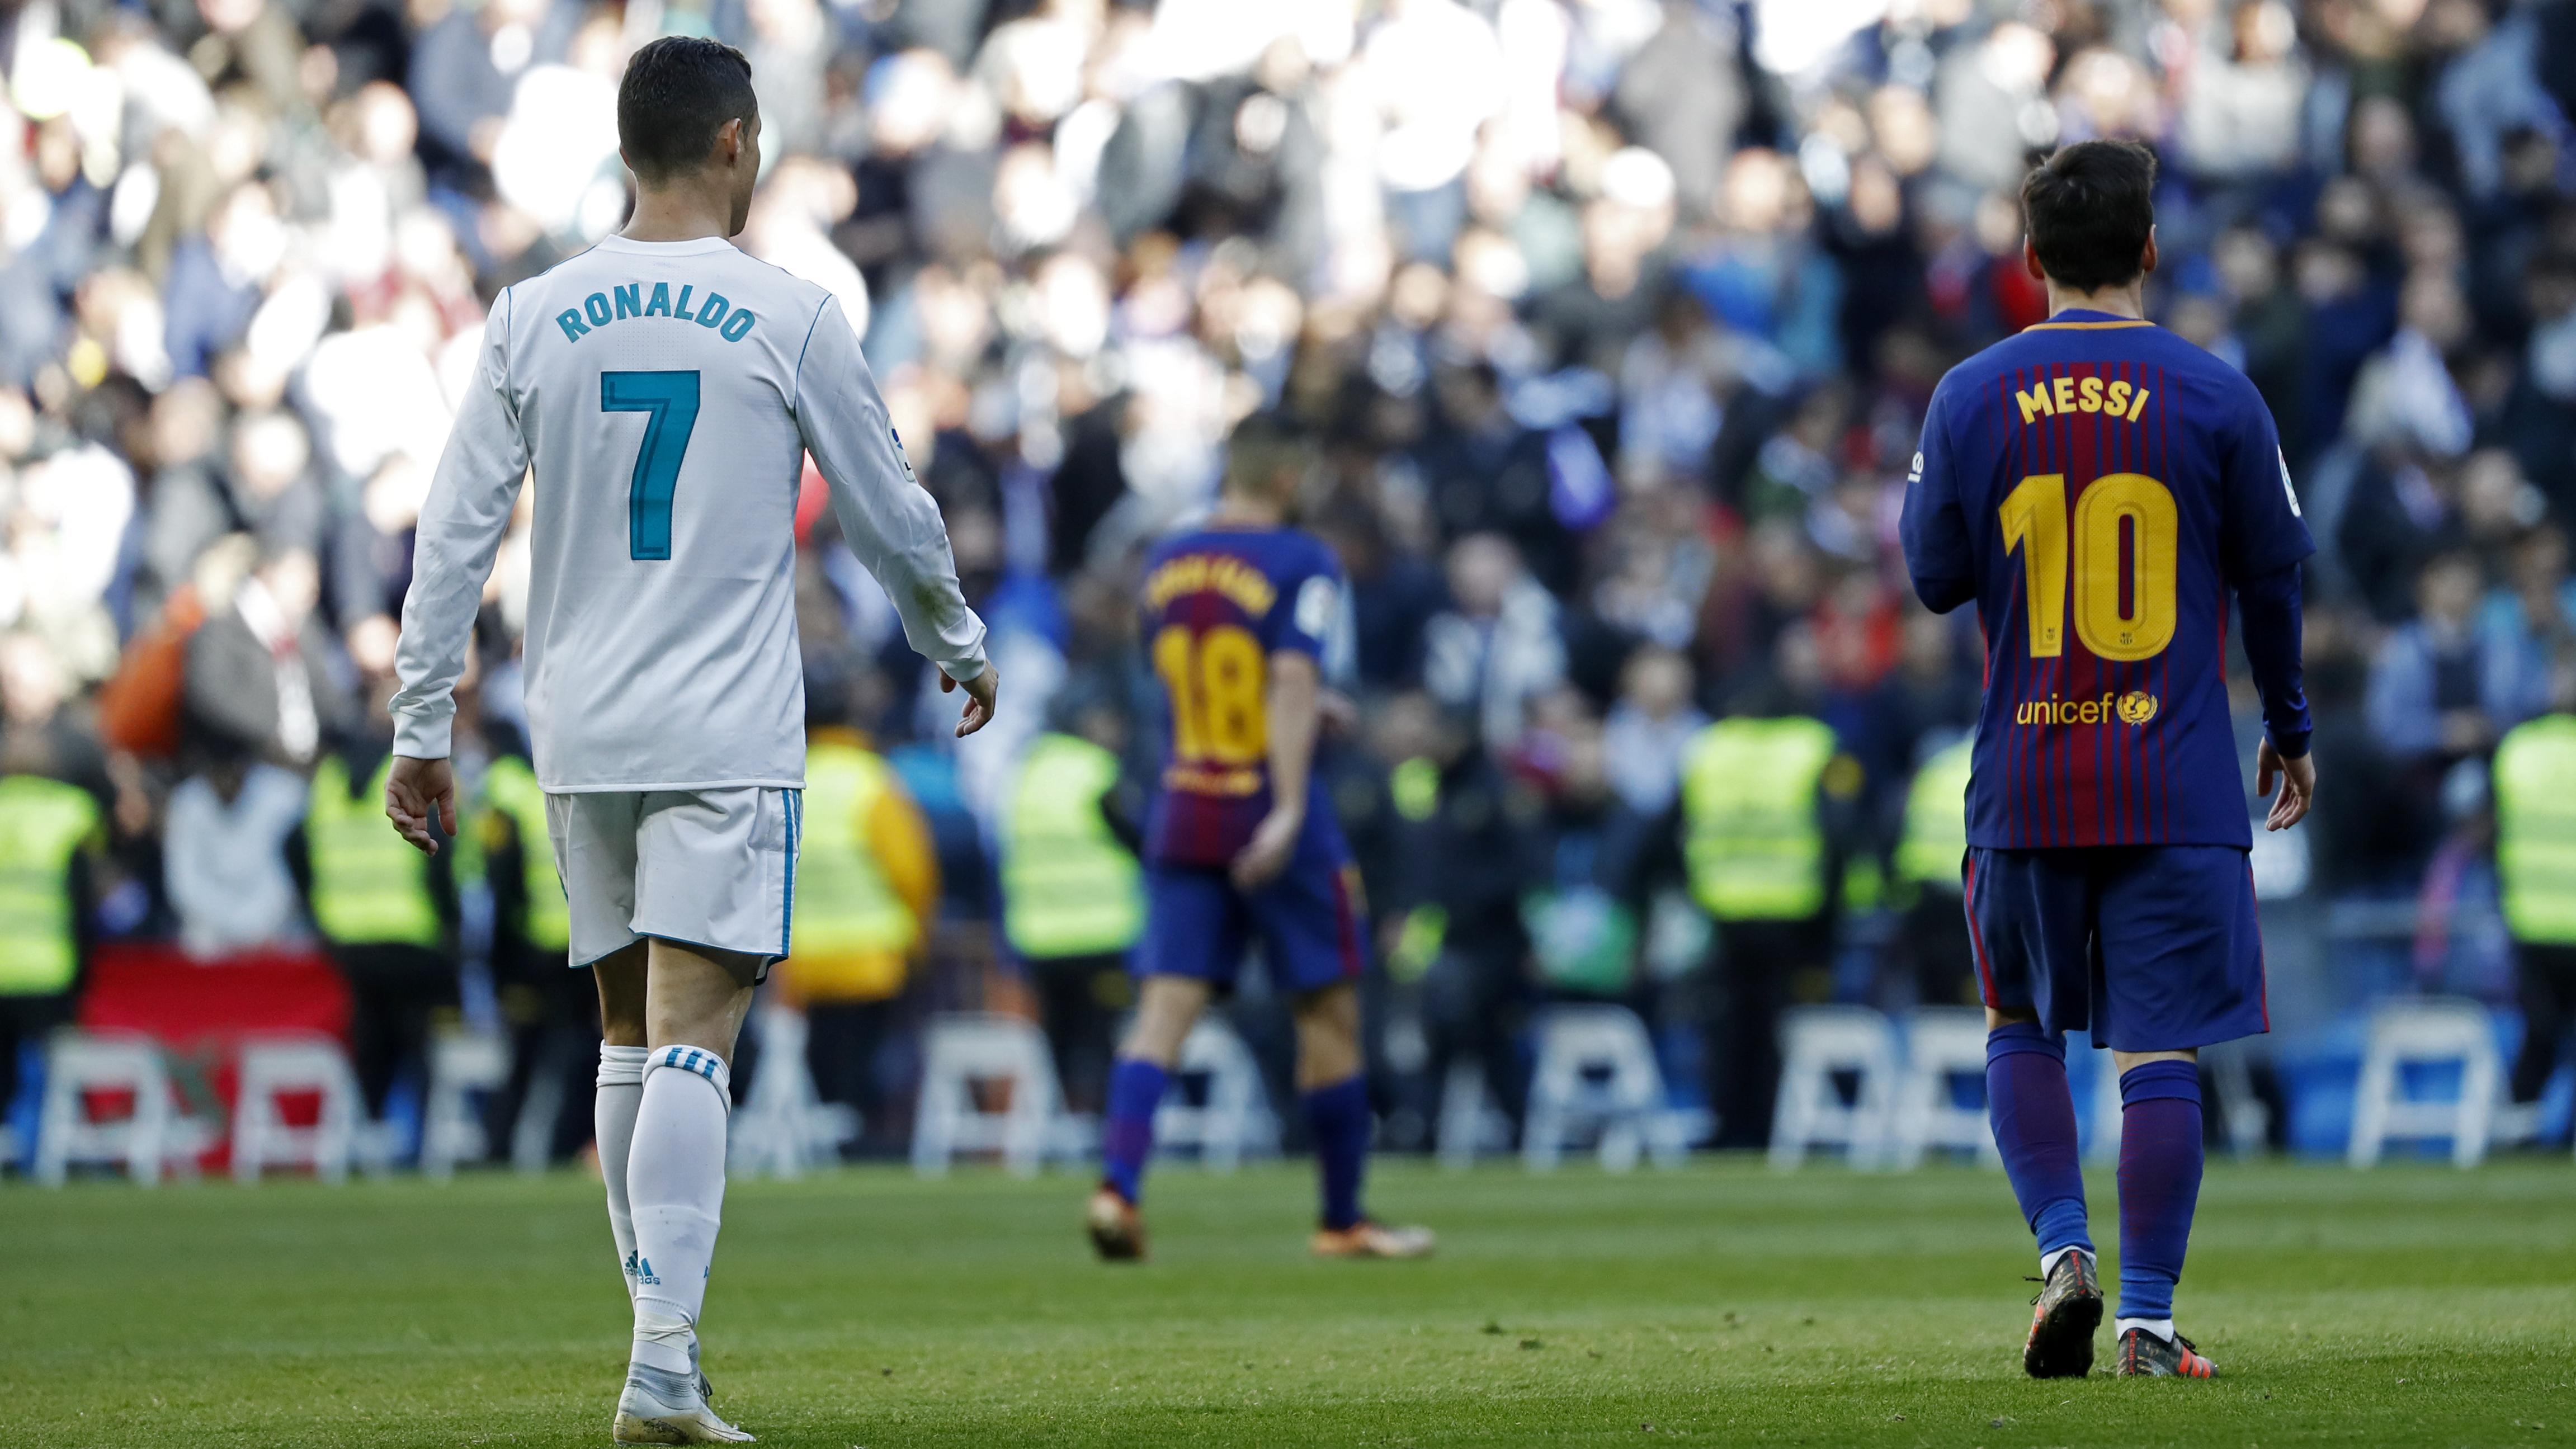 Tuy nhiên, sự kình địch trong màu áo CLB giữa Ronaldo và Messi có mức độ sát thương cao nhất